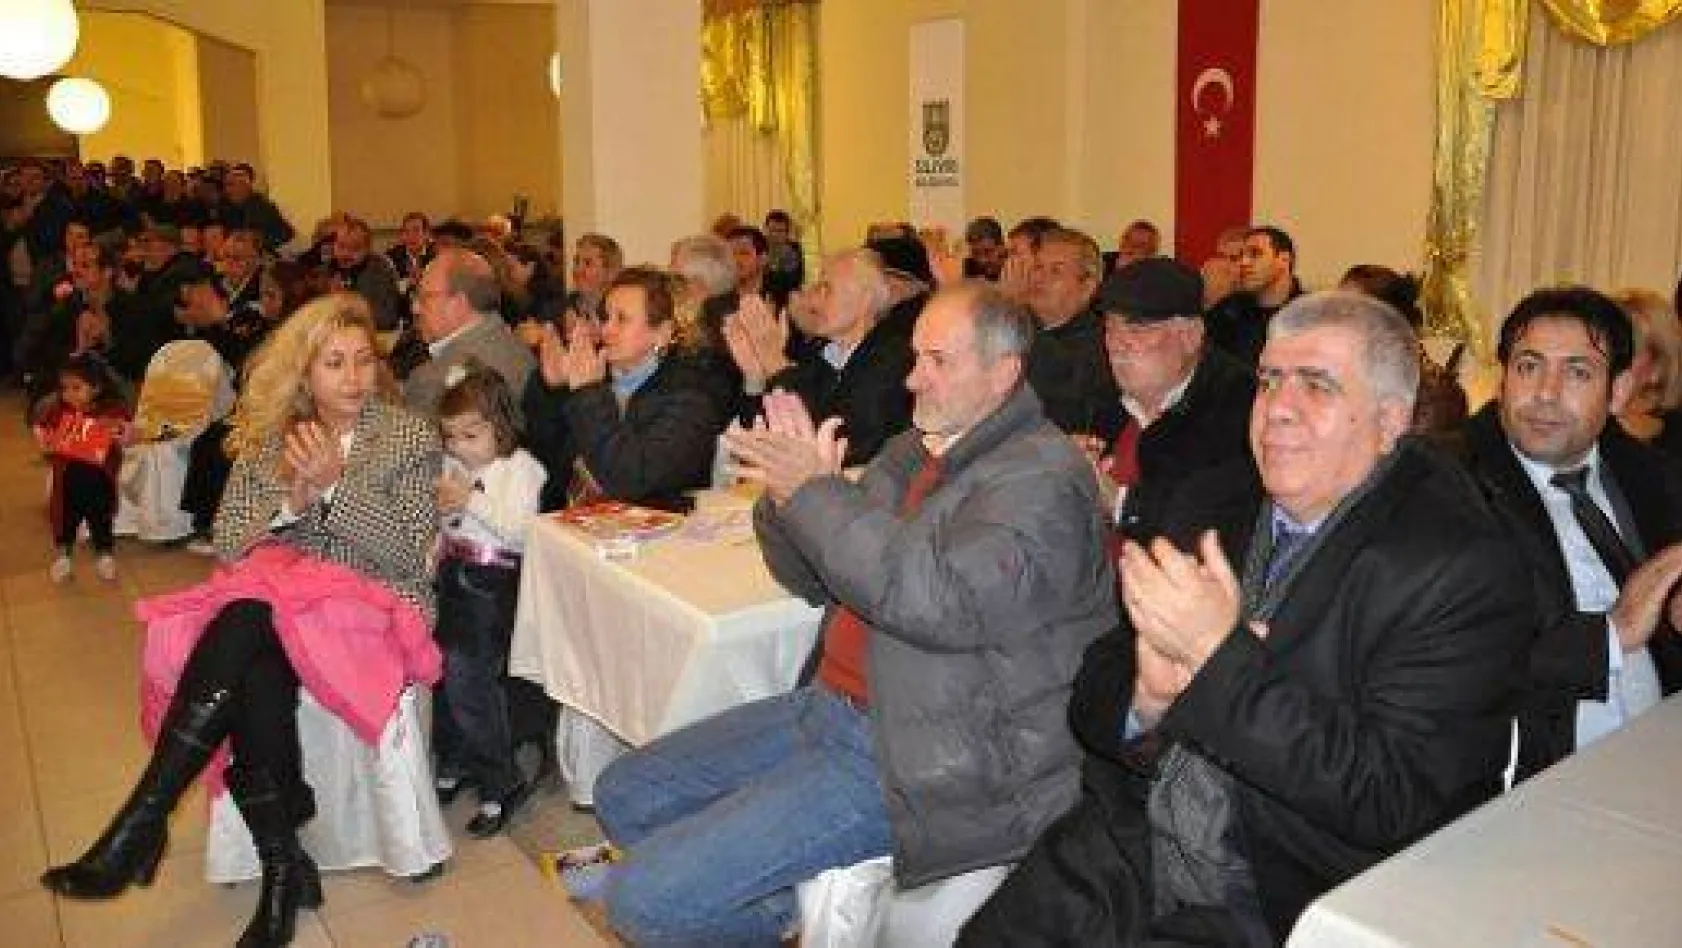 Selimpaşa Halk Toplantısı Yoğun Katılımla Gerçekleşti